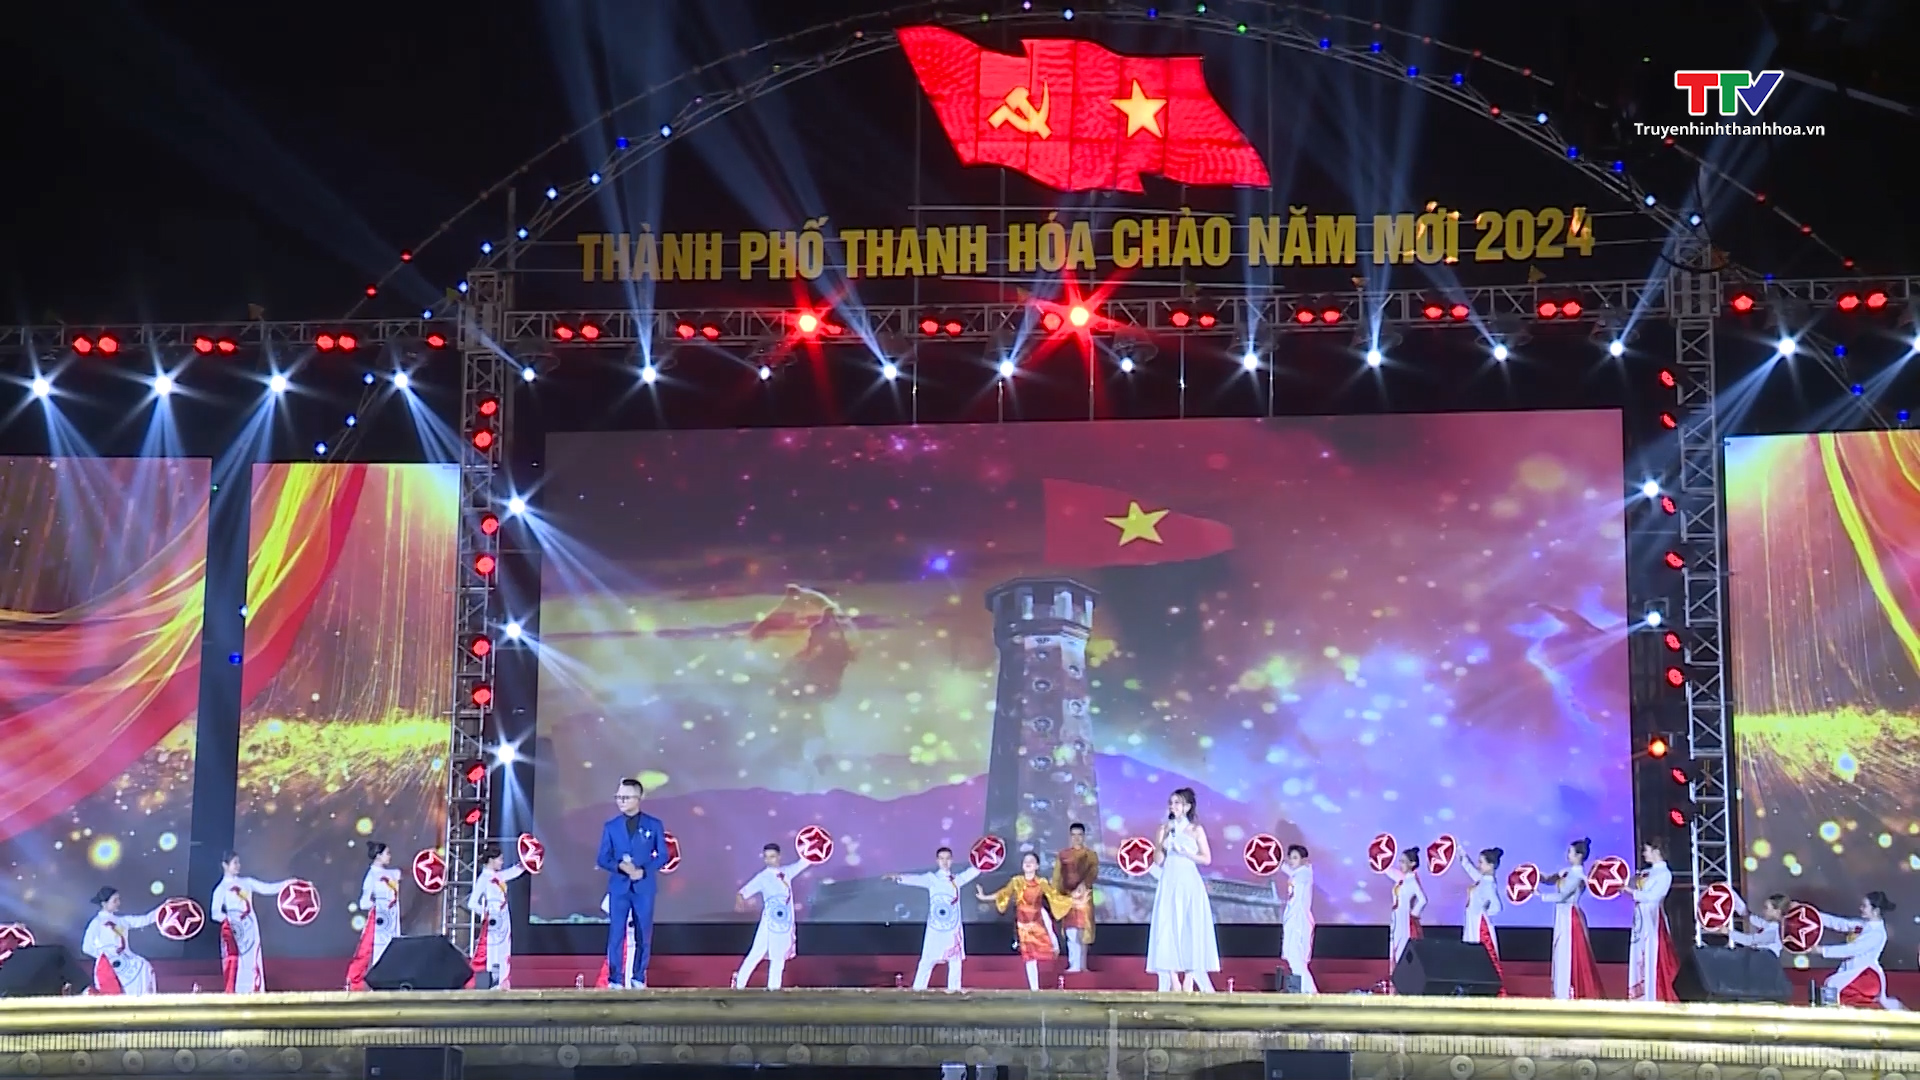 Thành phố Thanh Hóa tổ chức Chương trình nghệ thuật Chào năm mới 2024- Ảnh 1.